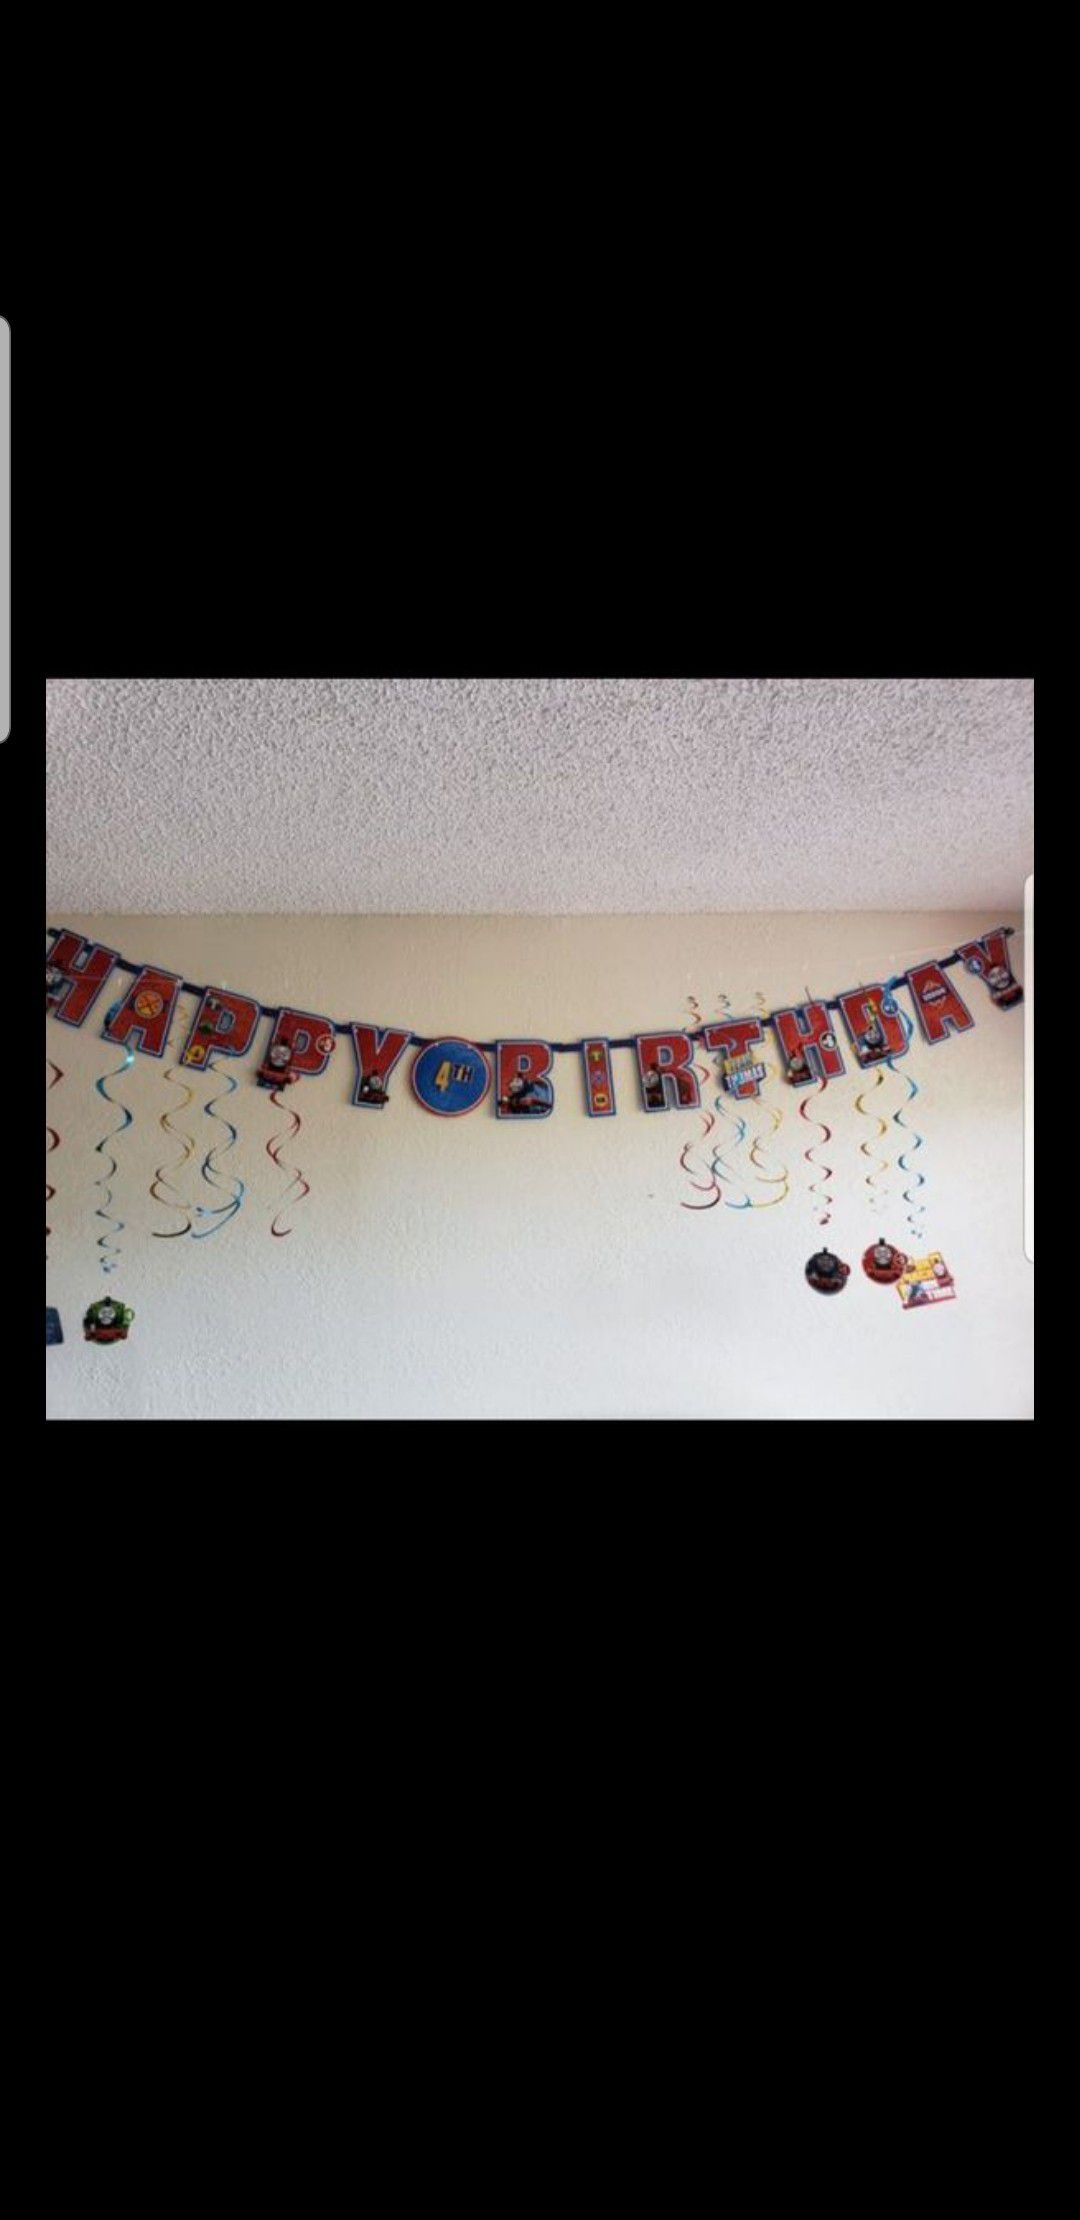 Thomas&friends customizable happy birthday banner&decoration accessories/Cartel personalizable para cumpleaño y accessorios de Thomas el tren